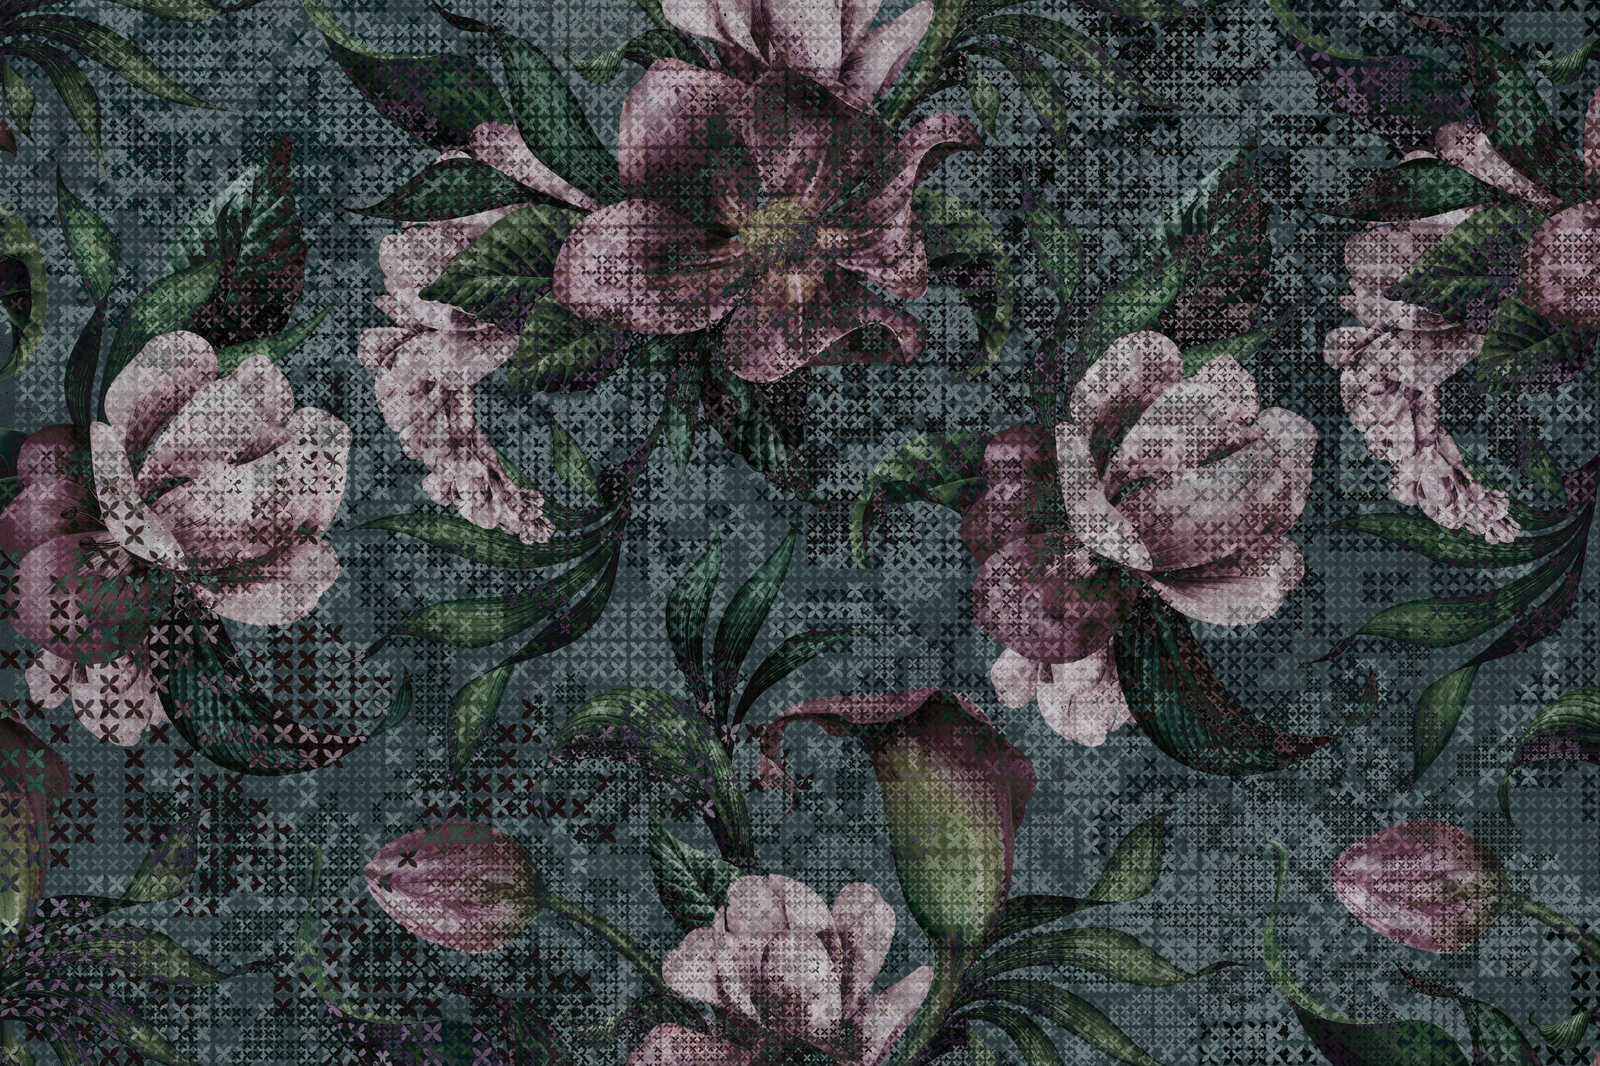             Flowers Canvas Painting Pixel Design - 0.90 m x 0.60 m
        